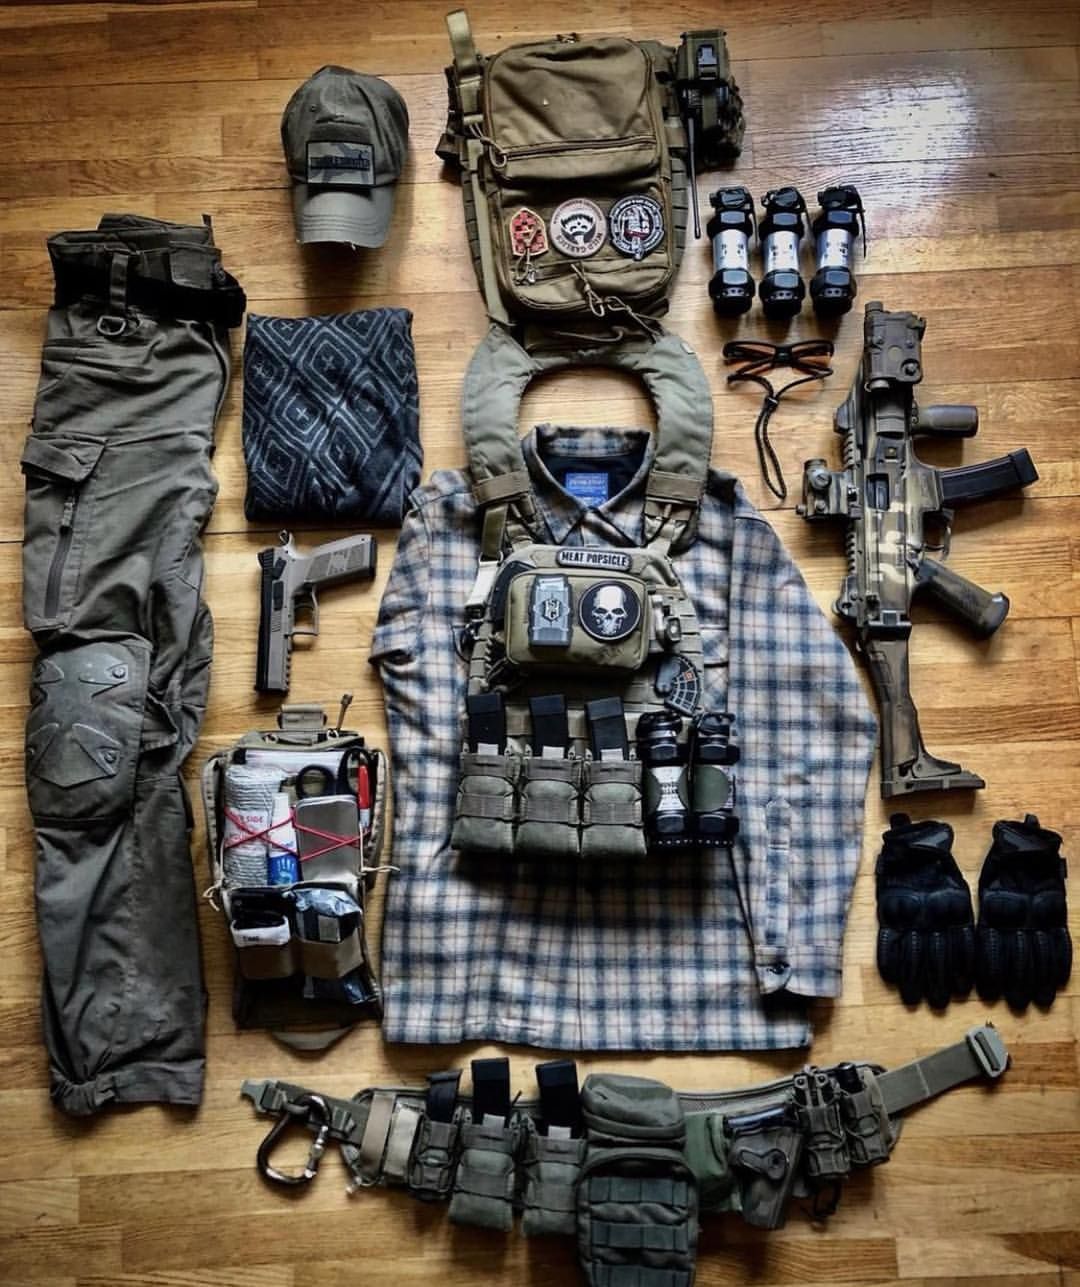 tactical gear